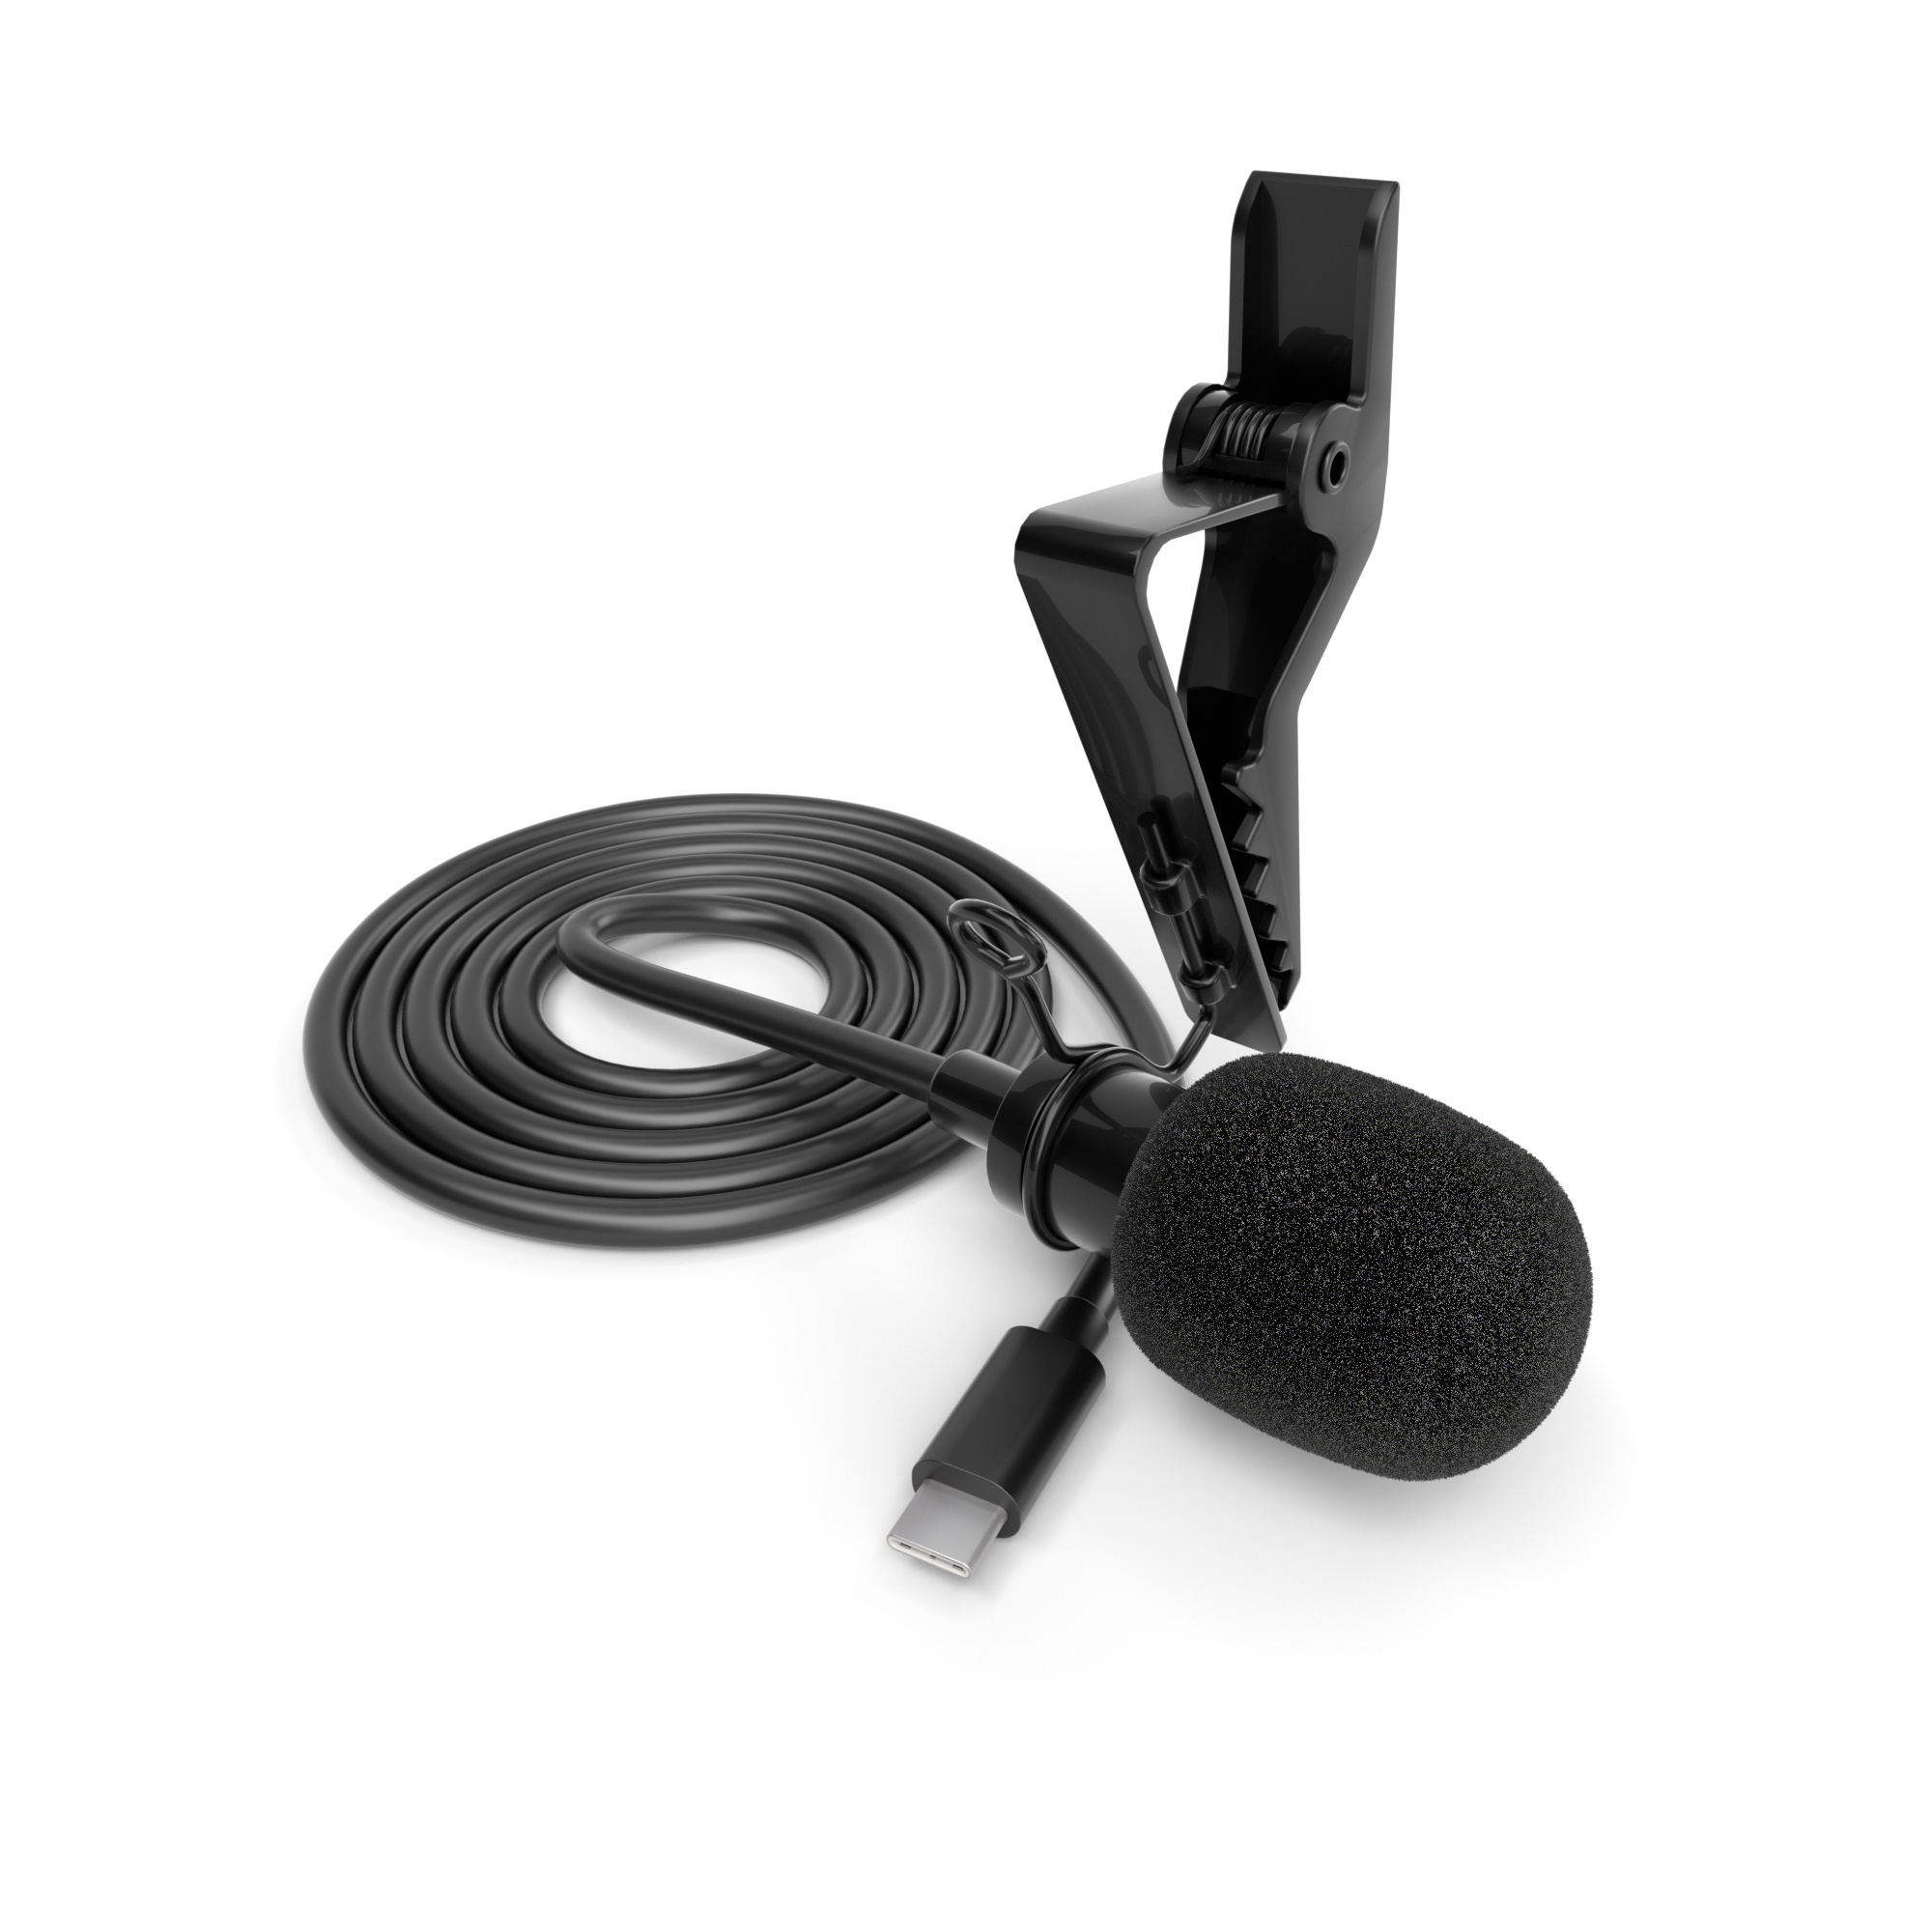 ayex Lavalier-Mikrofon mit Type-C z.B. für Android-Geräte und PCs perfekt für Interviews, Livestreams LV-1